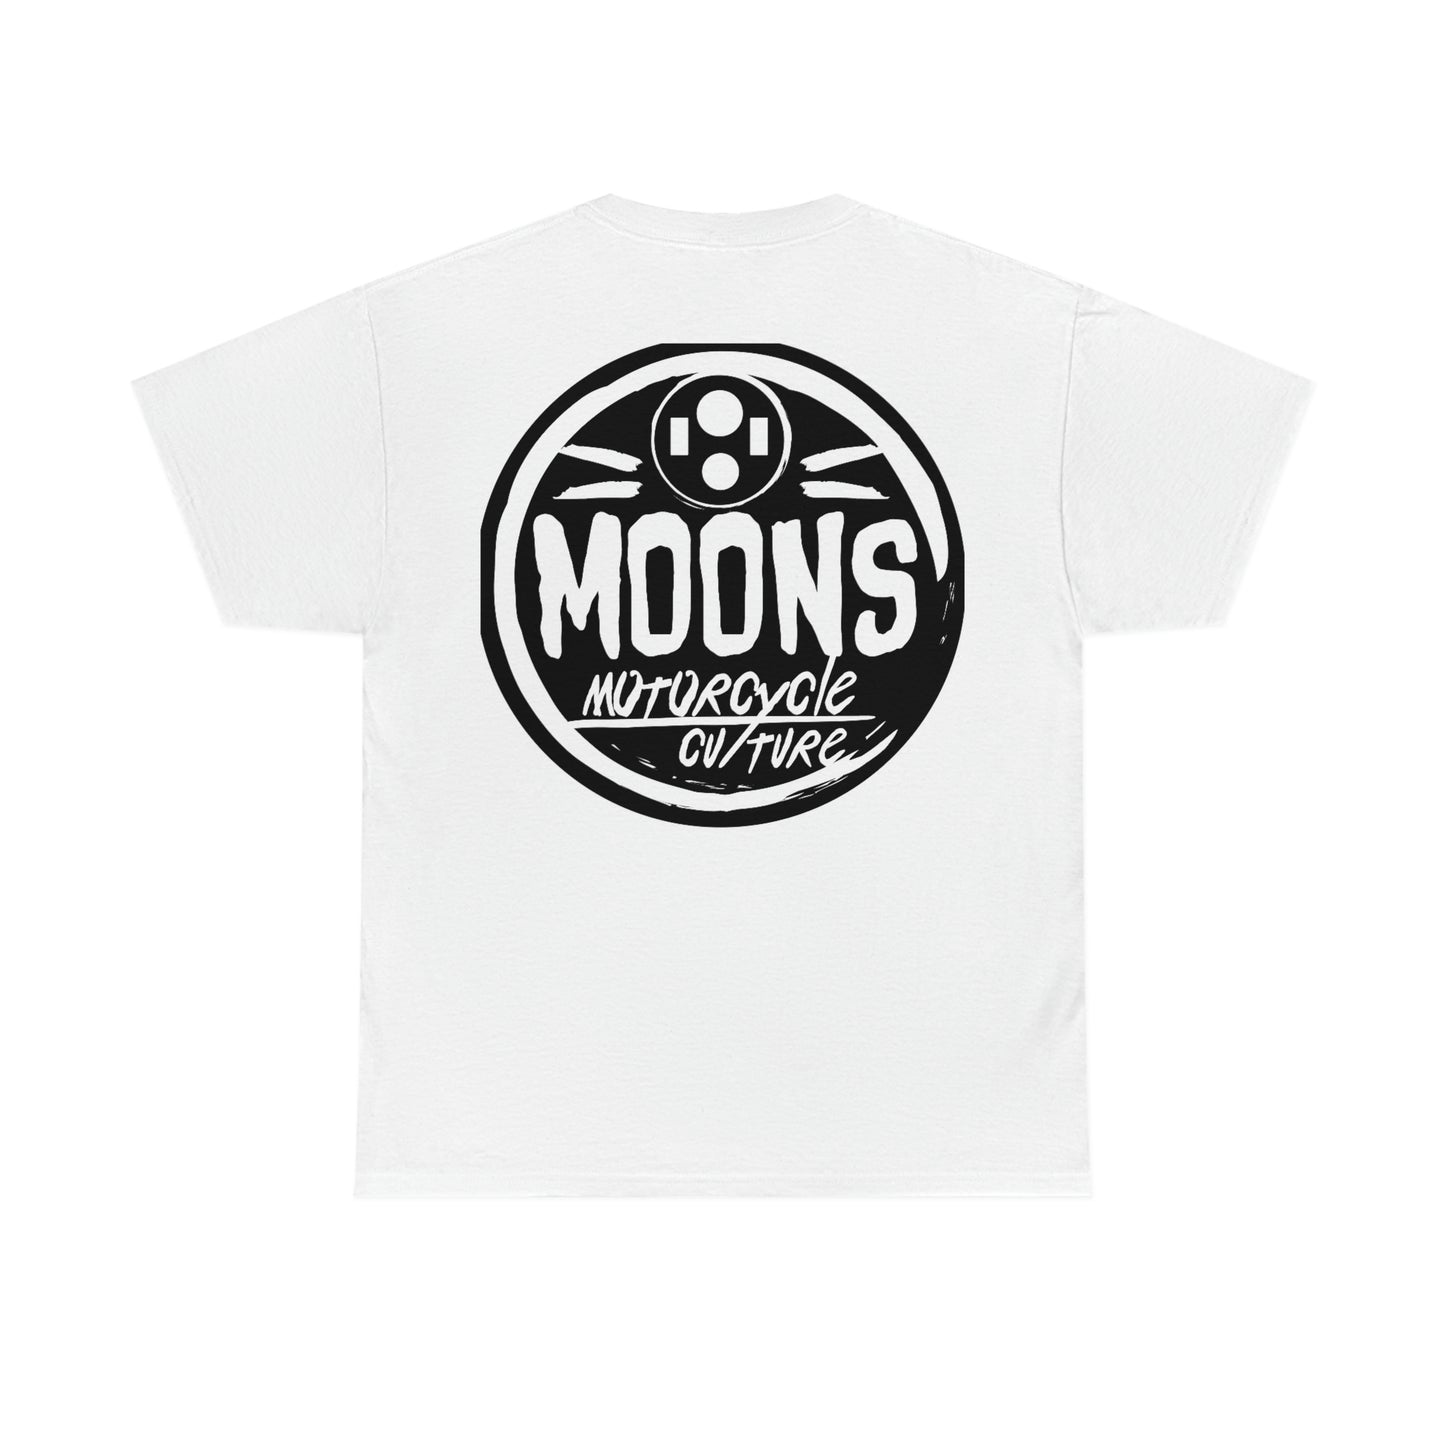 MOONSMC® ヘッドライト サークル ロゴ T シャツ